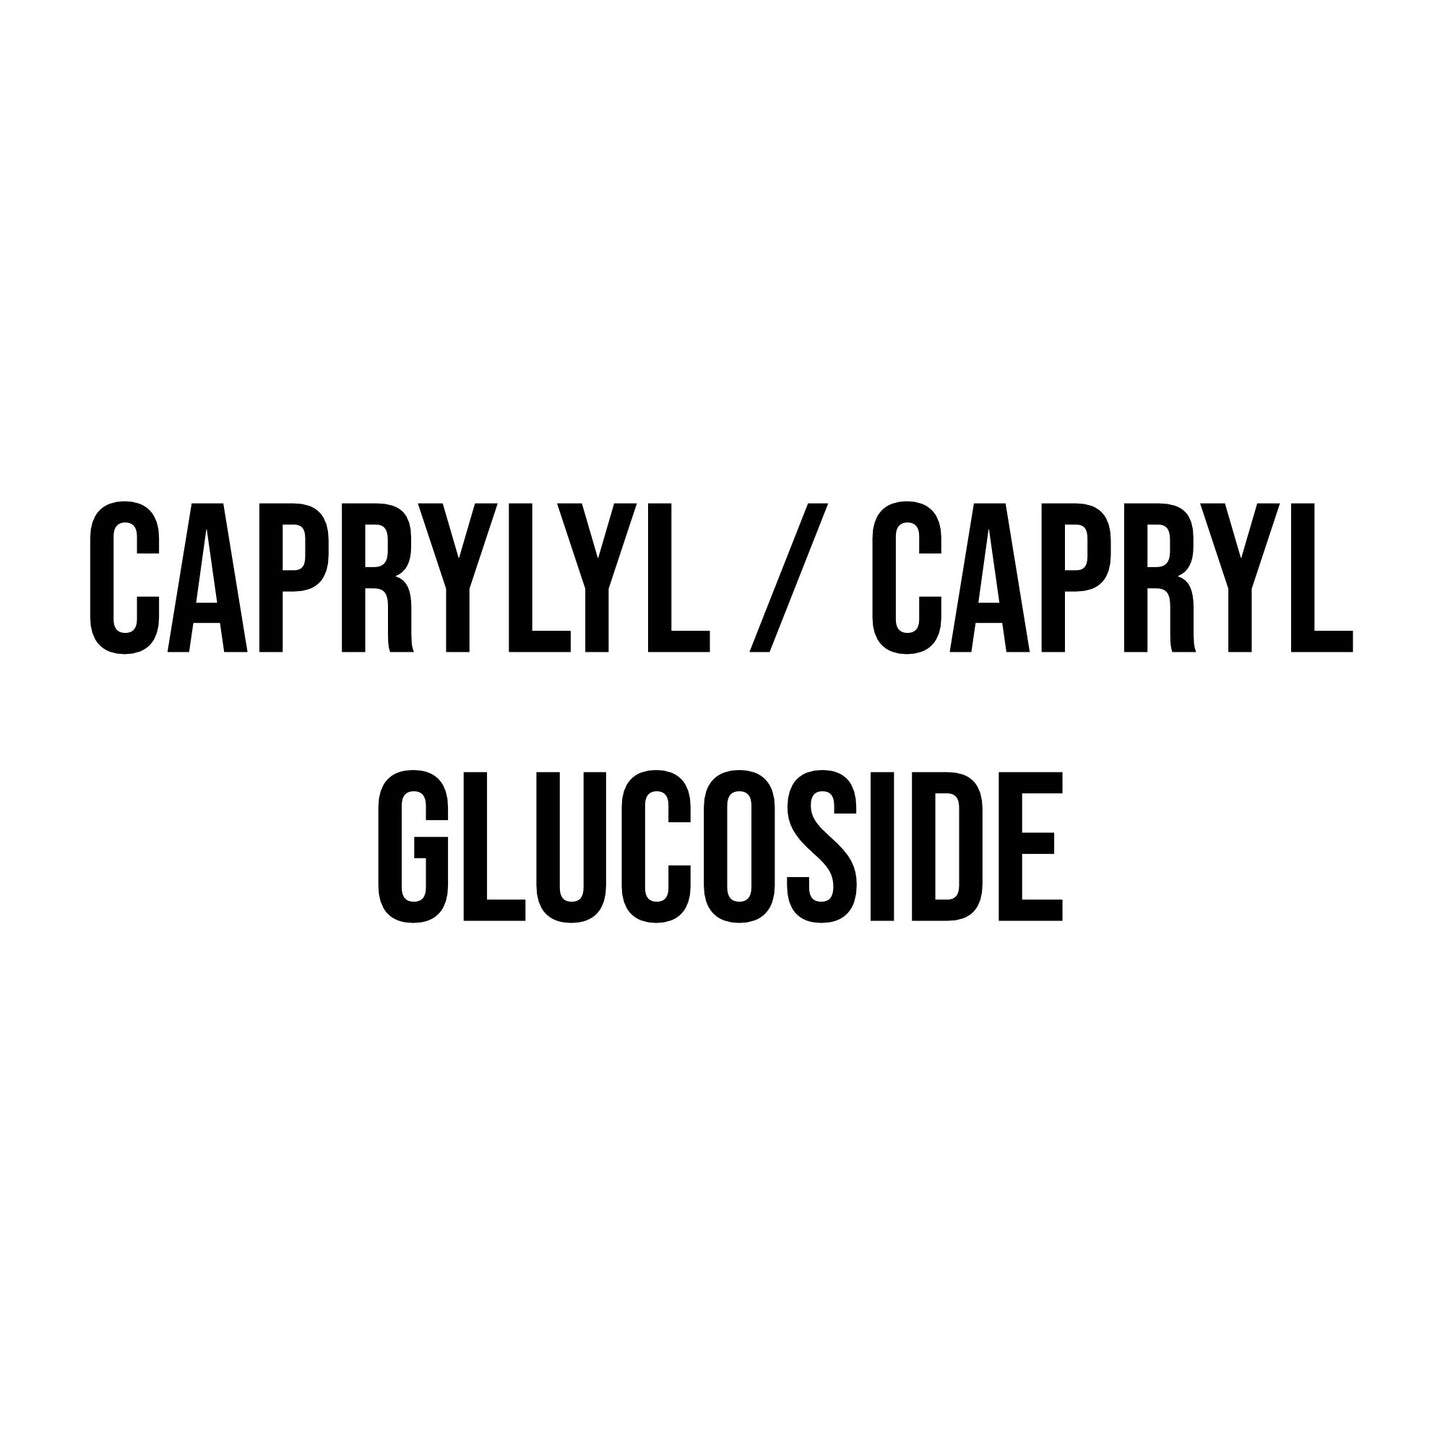 Caprylyl / Capryl Glucoside